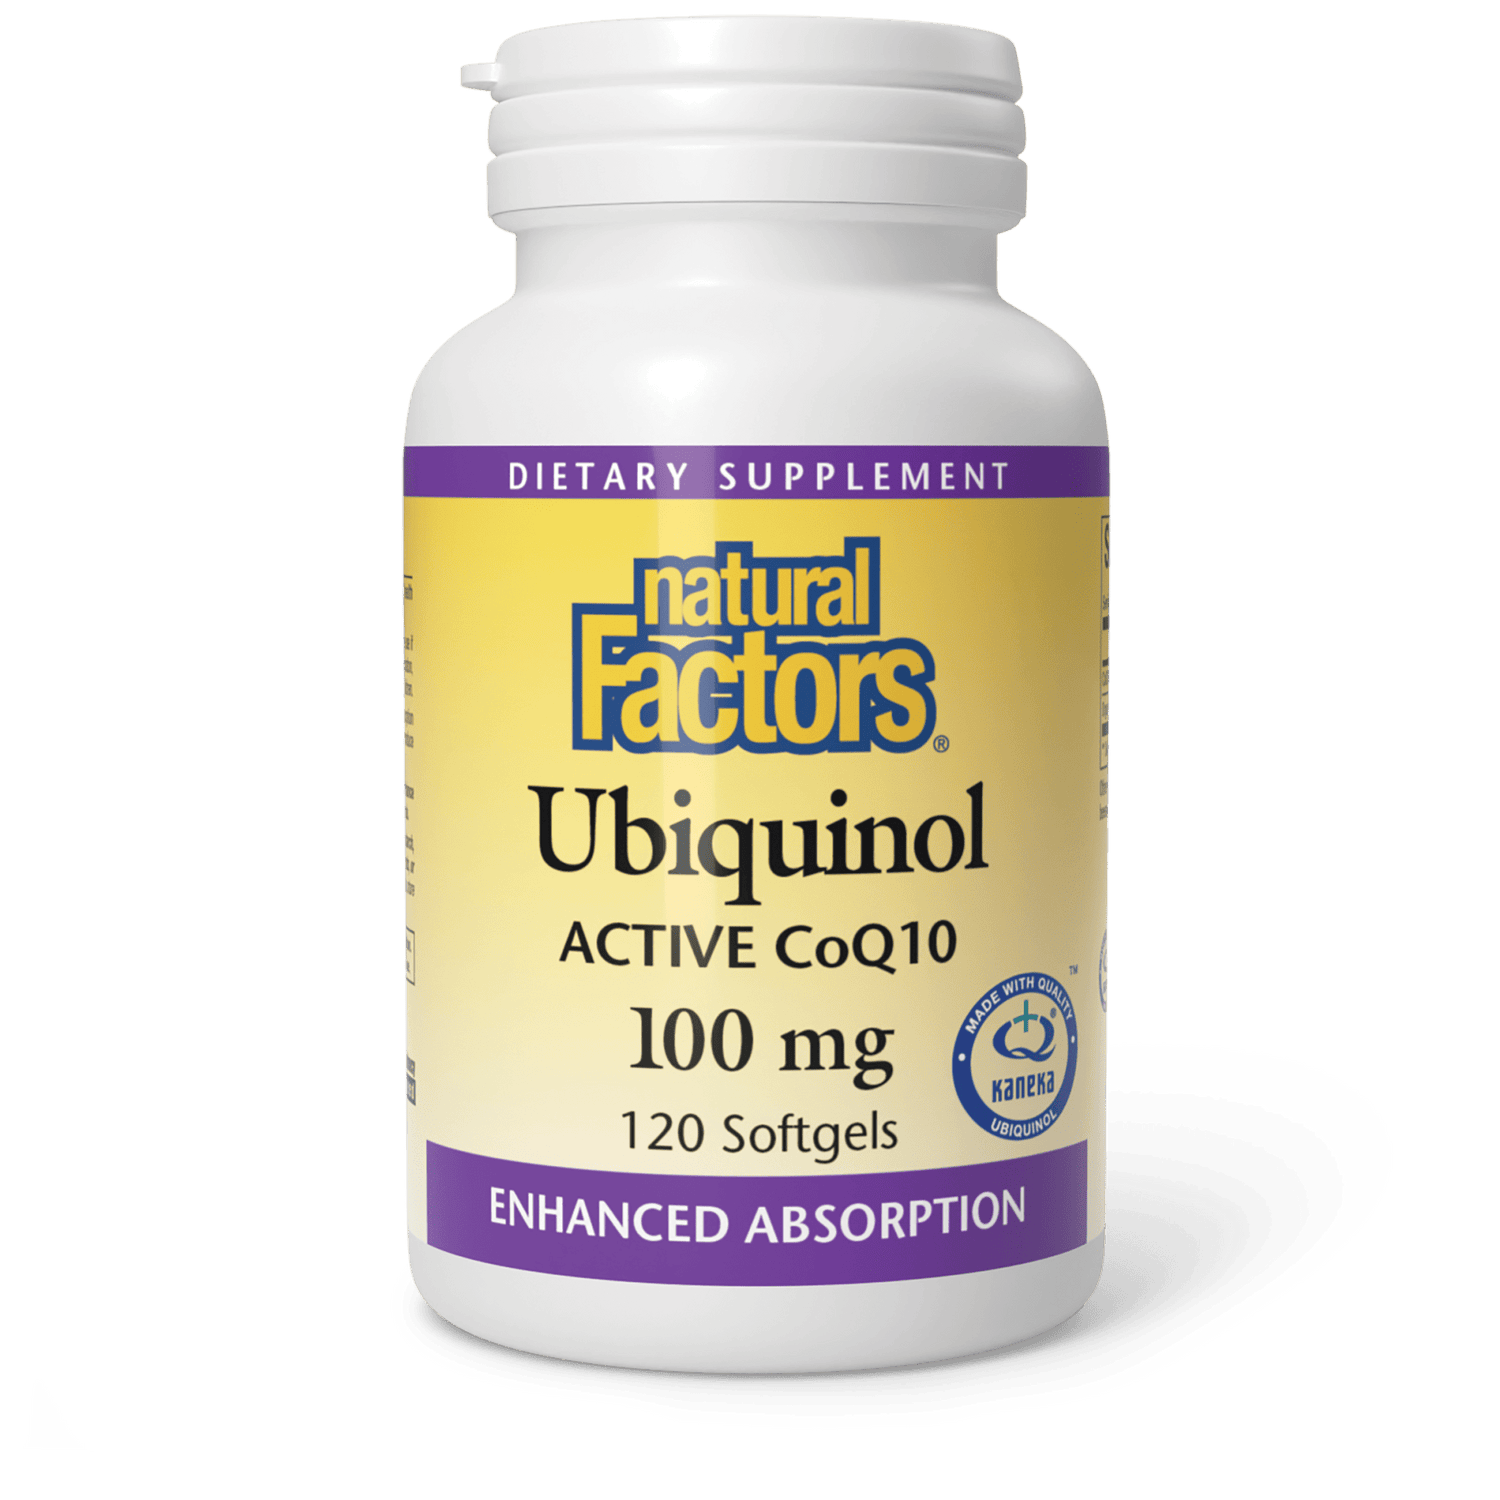 Ubiquinol Active CoQ10 for Natural Factors |variant|hi-res|20728U